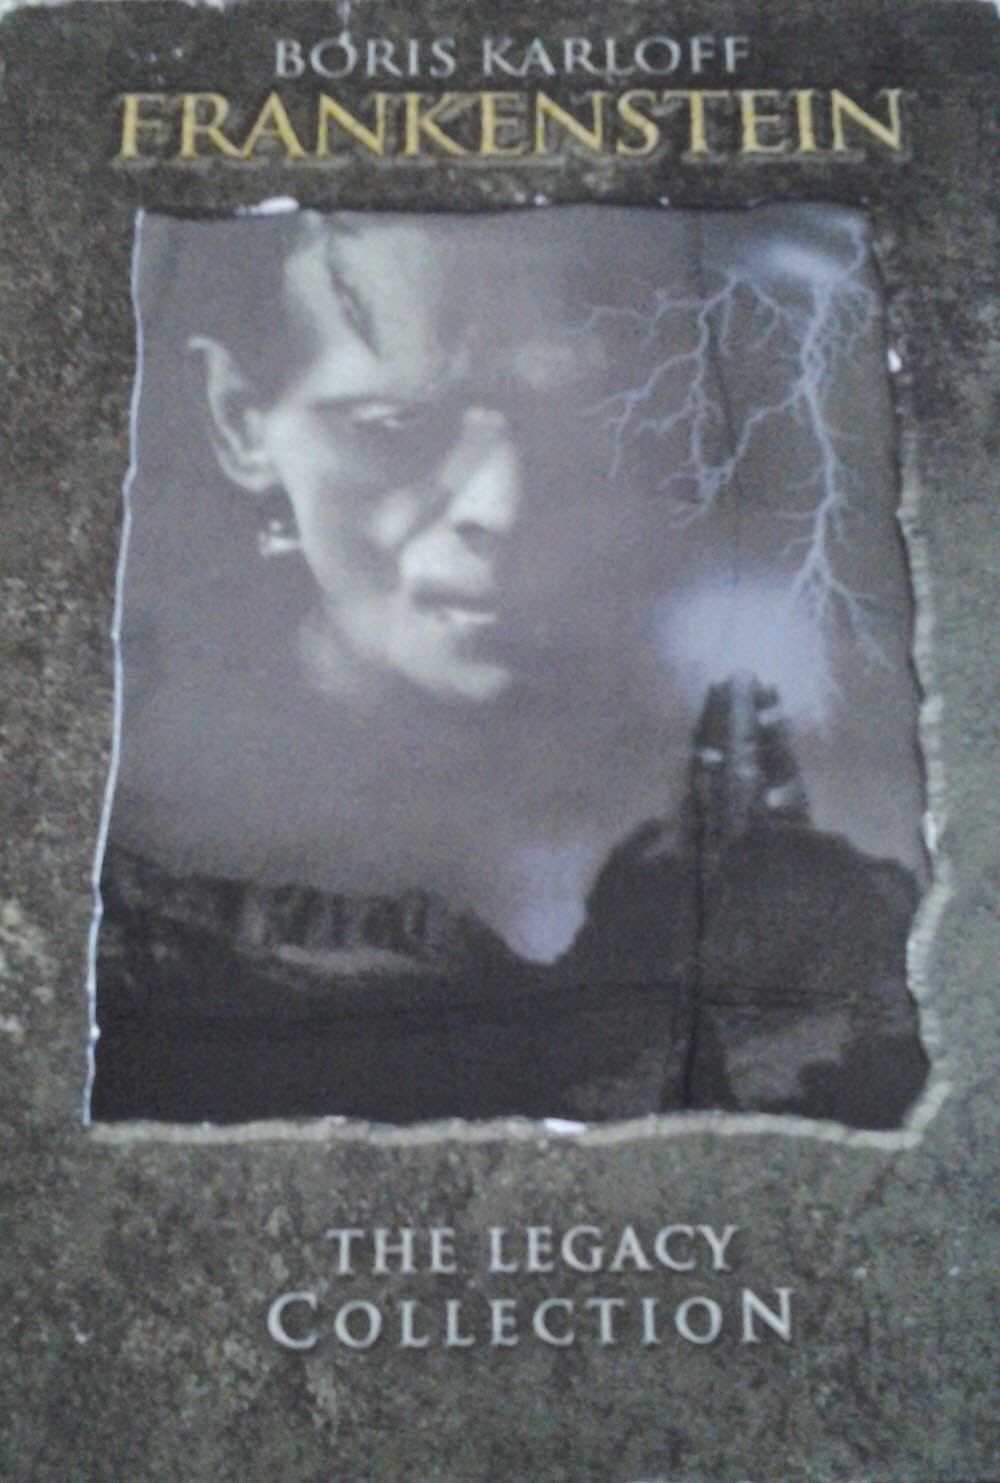 DVD Cover - Frankenstein 1931